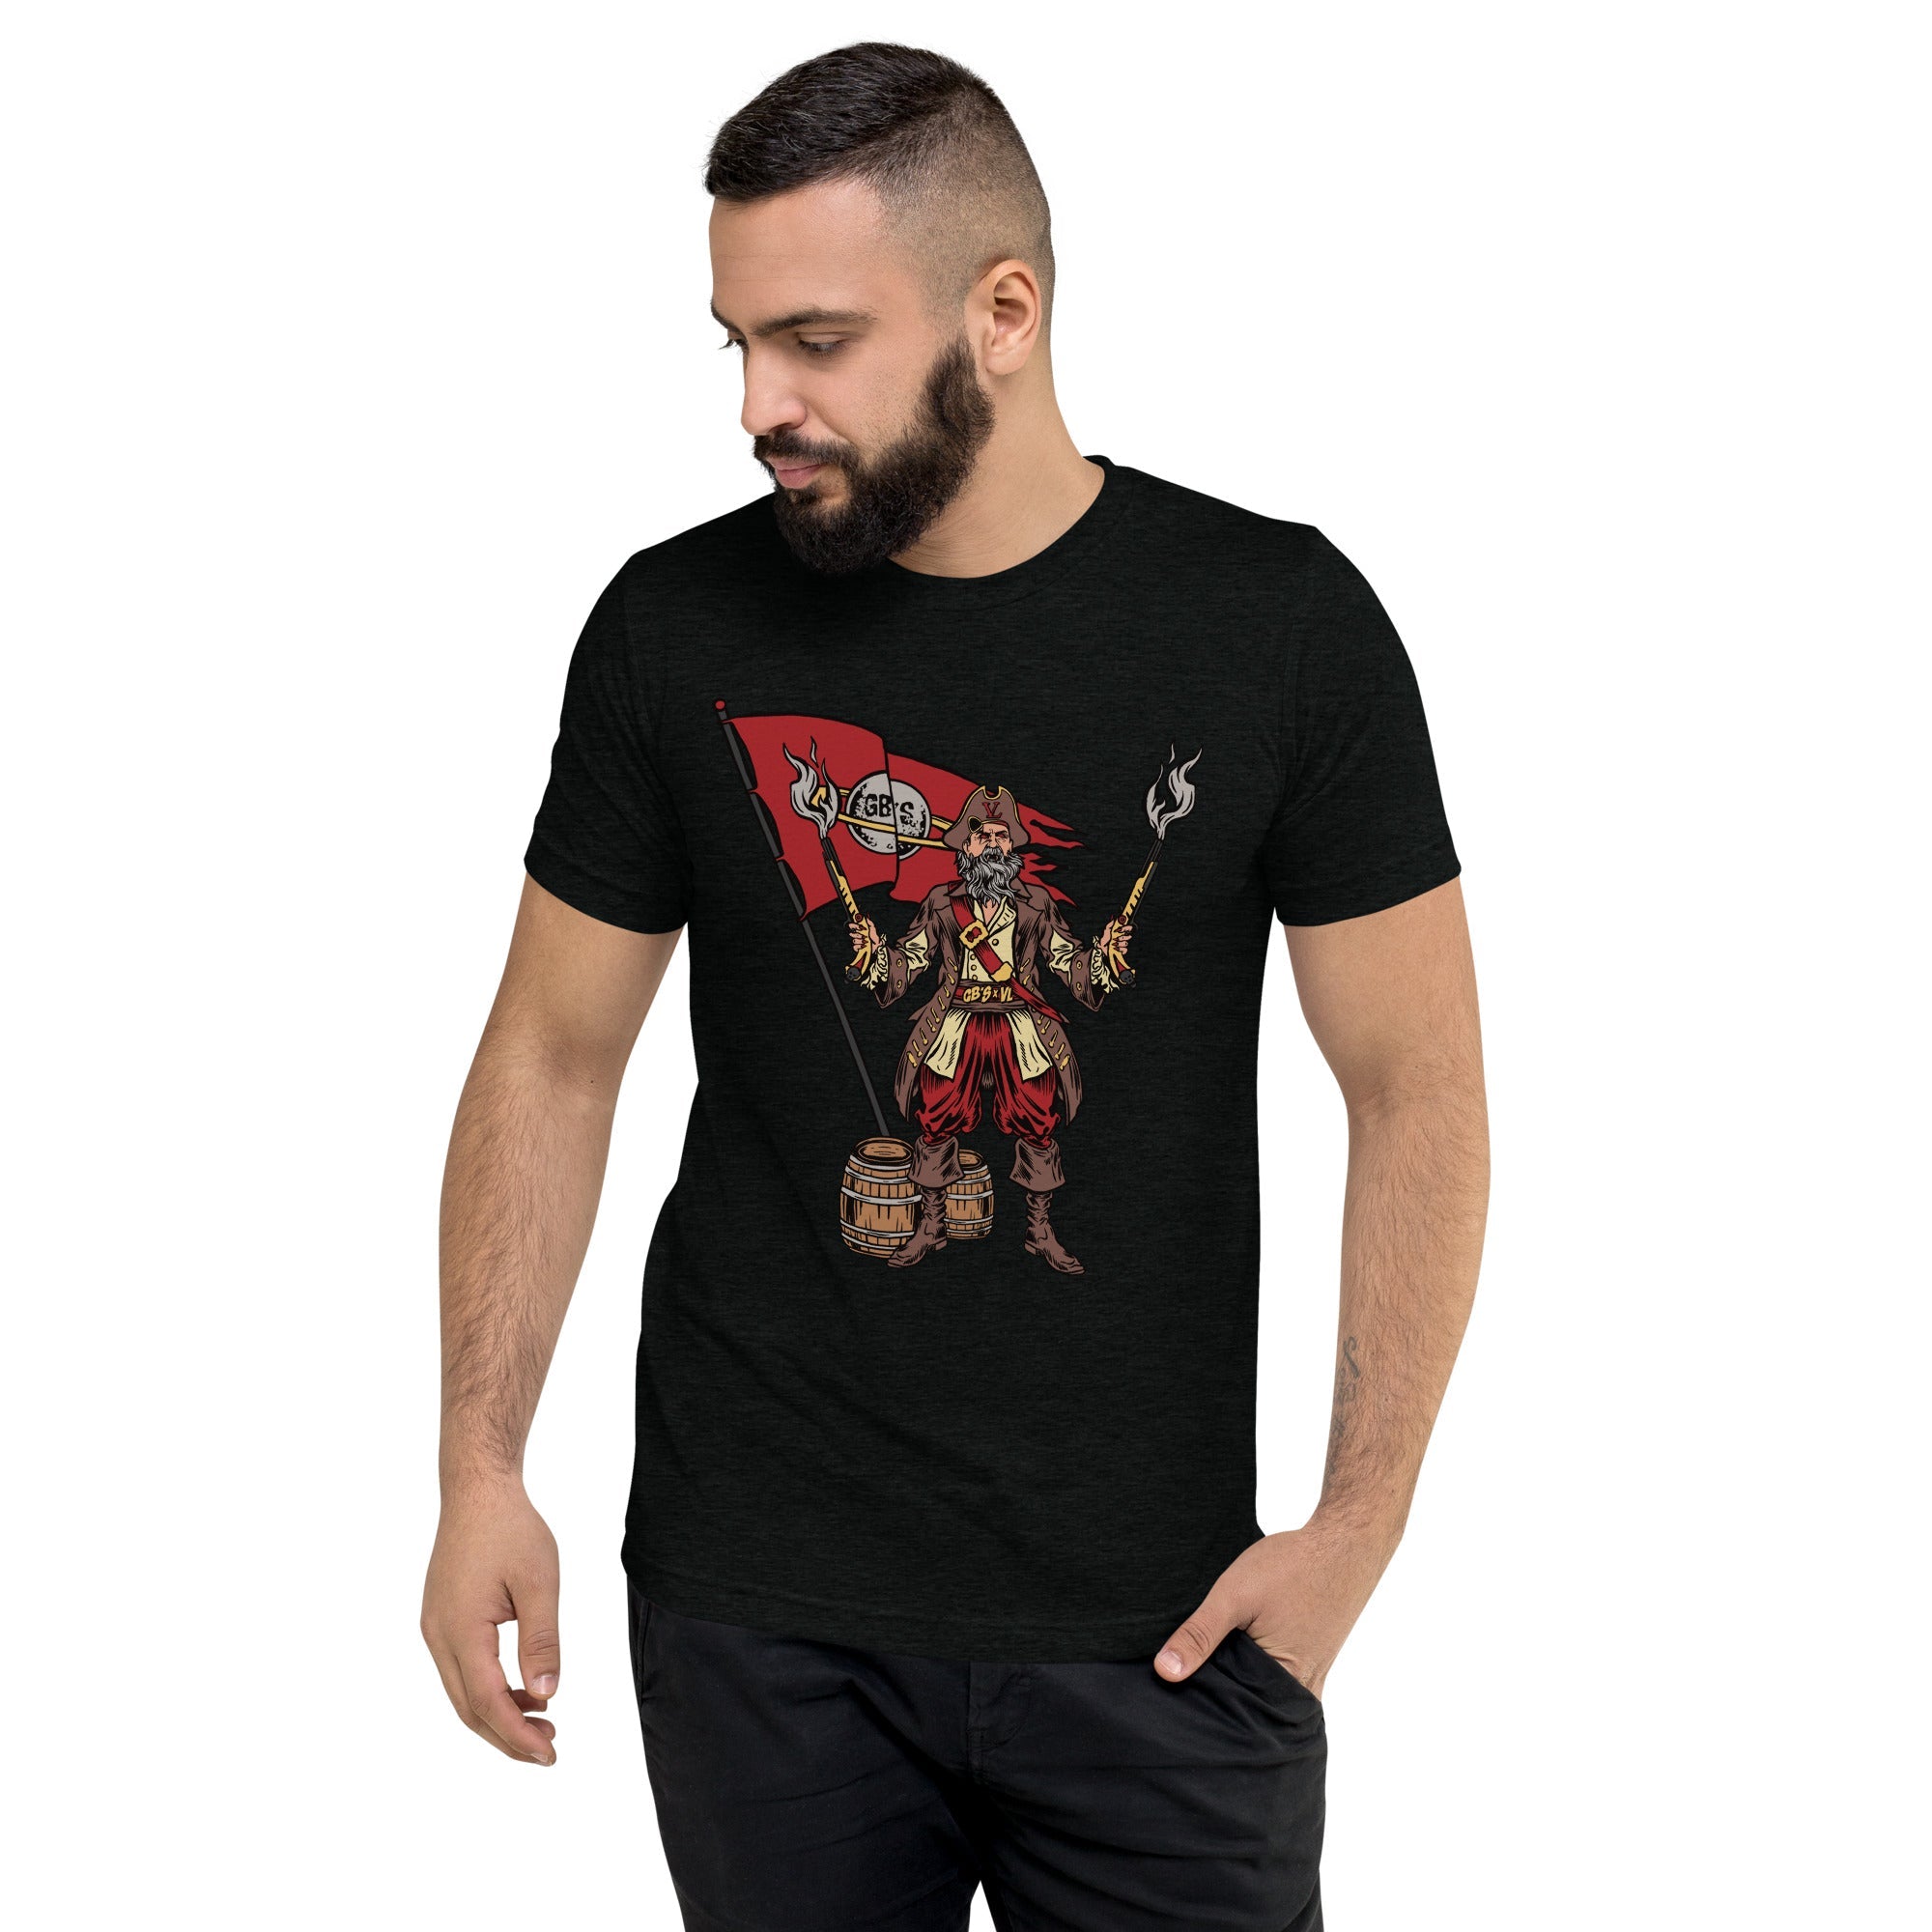 GBNY Solid Black Triblend / XS Vamp Life X GBNY "Pirate Vamp" T-shirt - Men's 1187077_6584